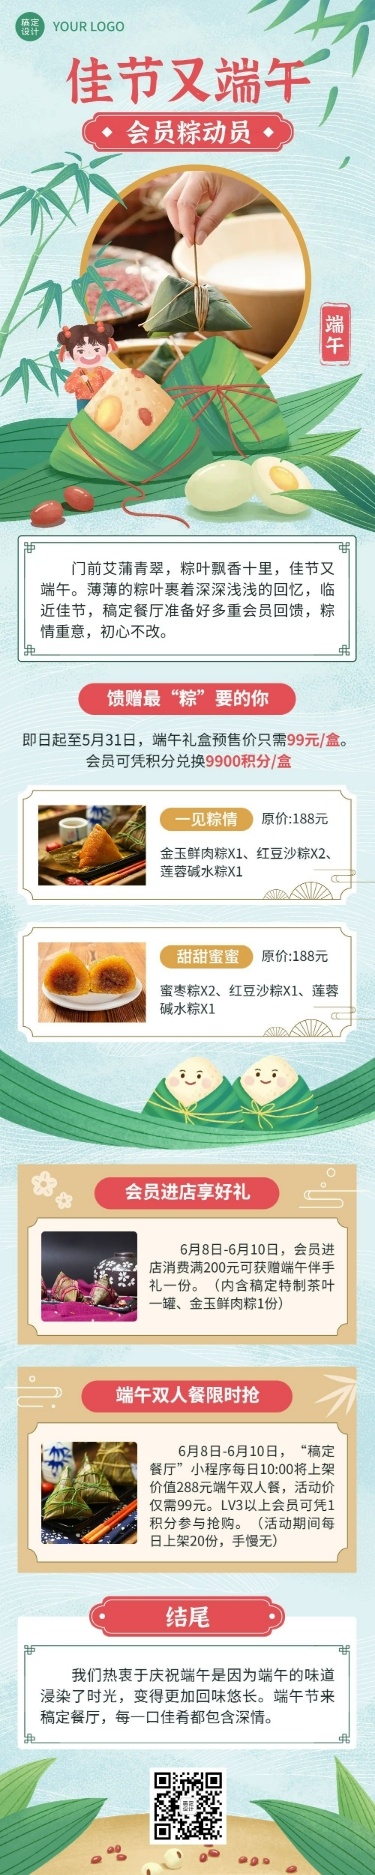 端午节餐饮粽子活动营销-文章长图